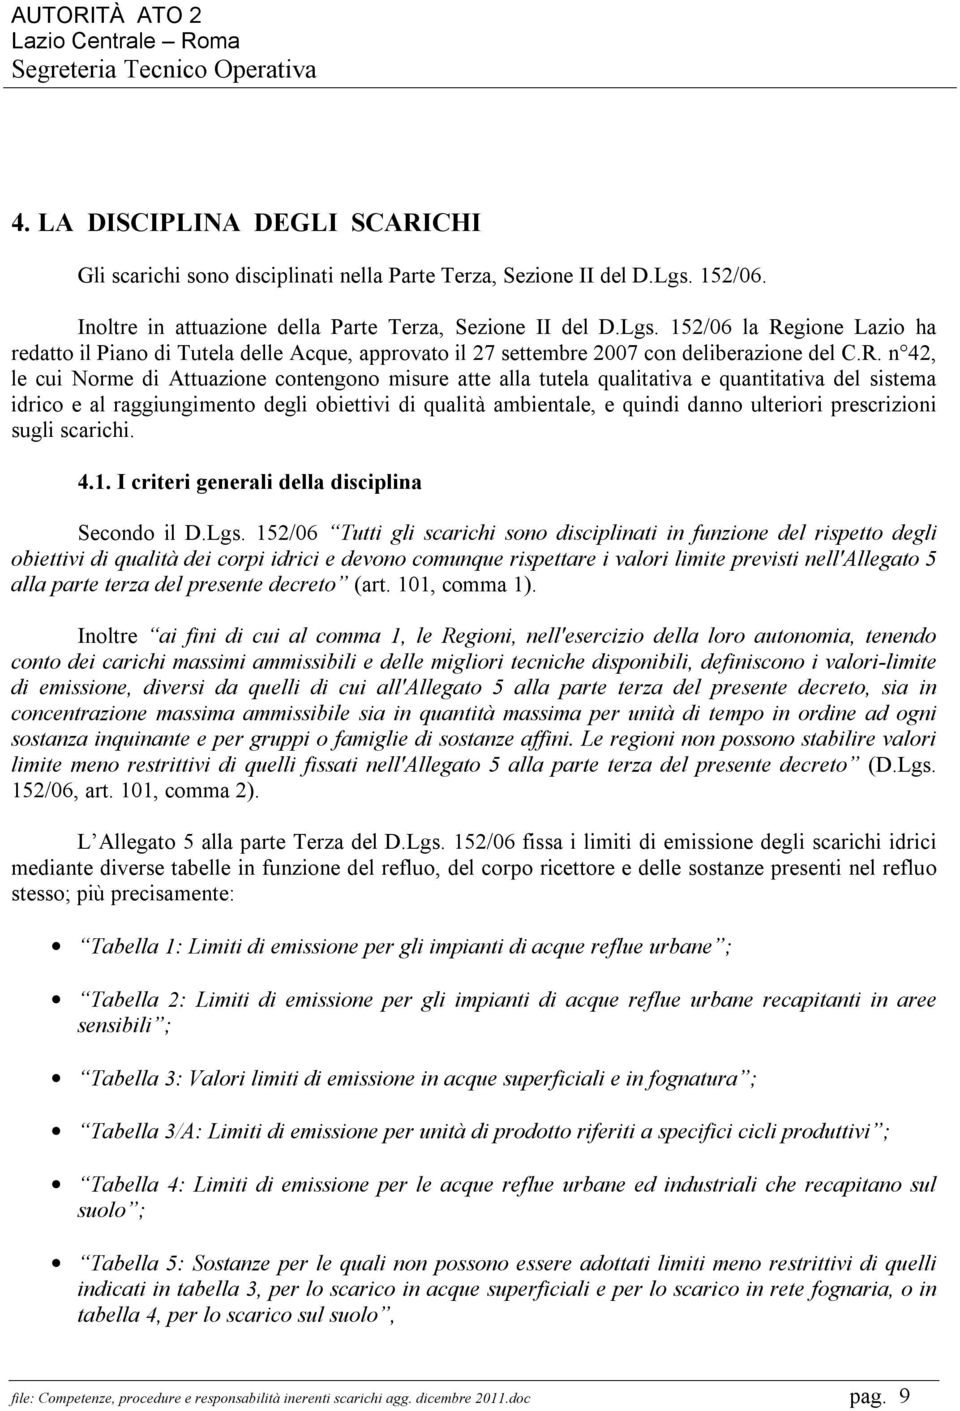 gione Lazio ha redatto il Piano di Tutela delle Acque, approvato il 27 settembre 2007 con deliberazione del C.R.